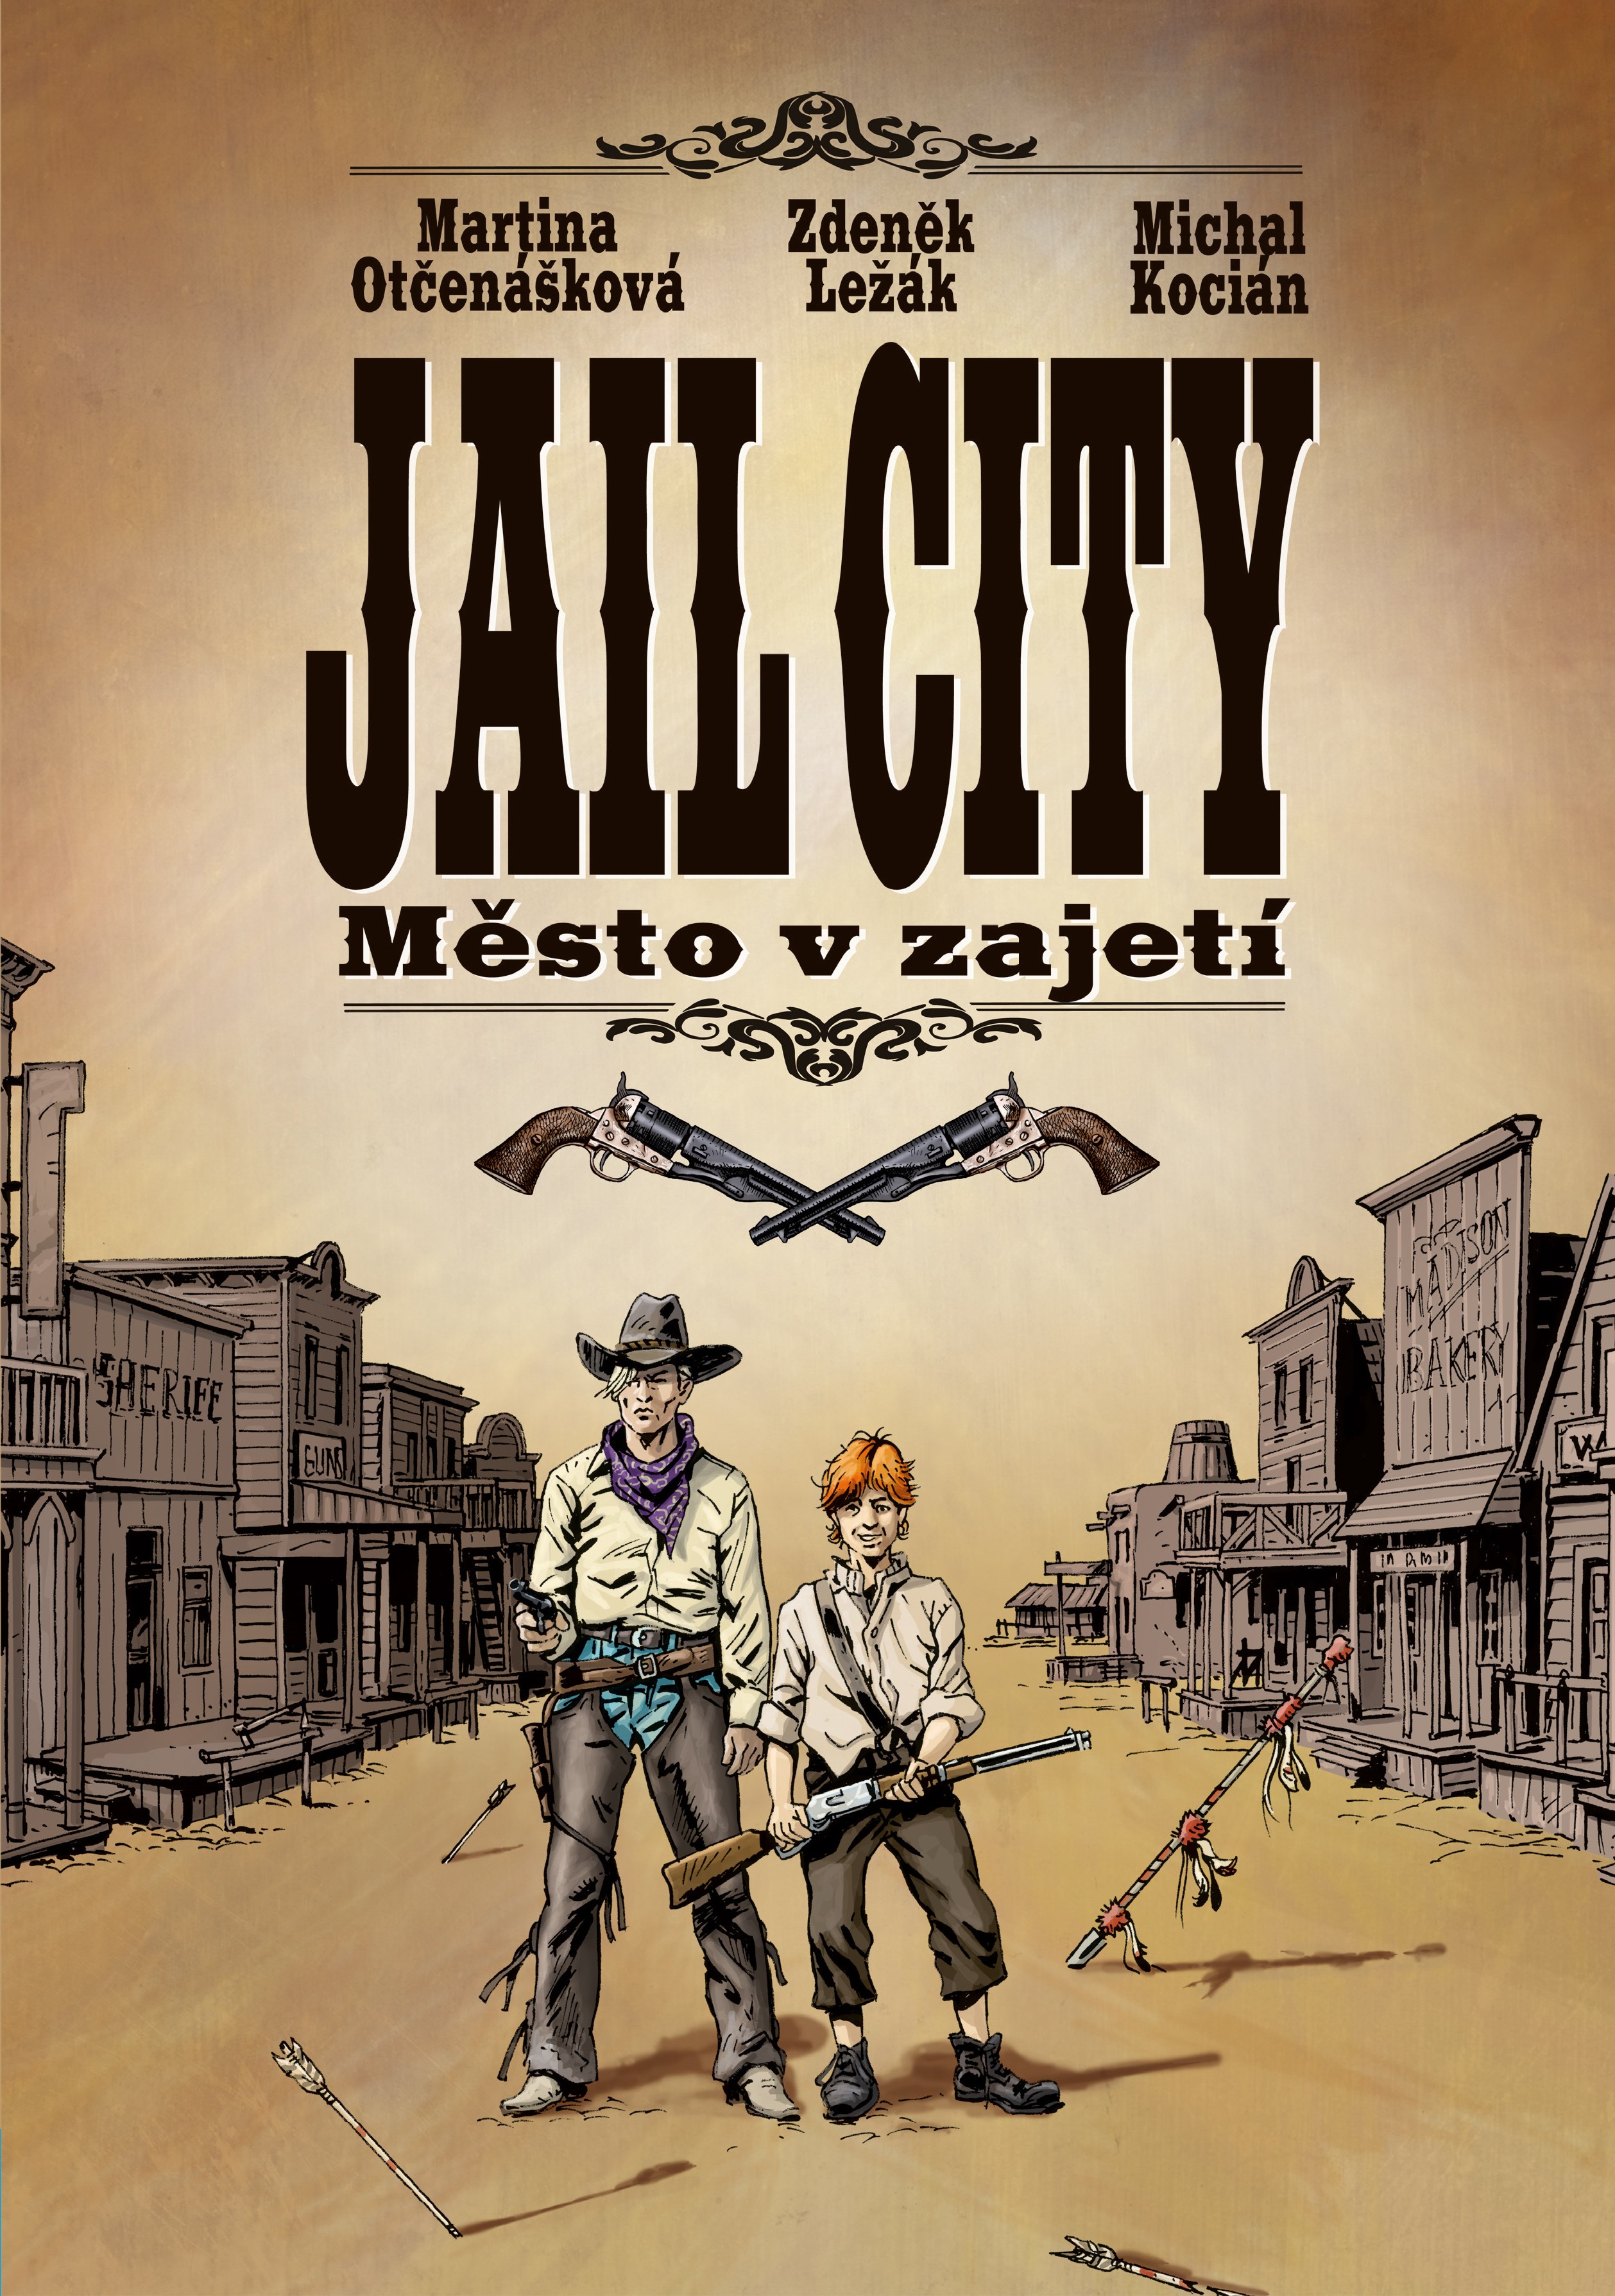 Jail City [Ležák Zdeněk, Otčenášová Martina]